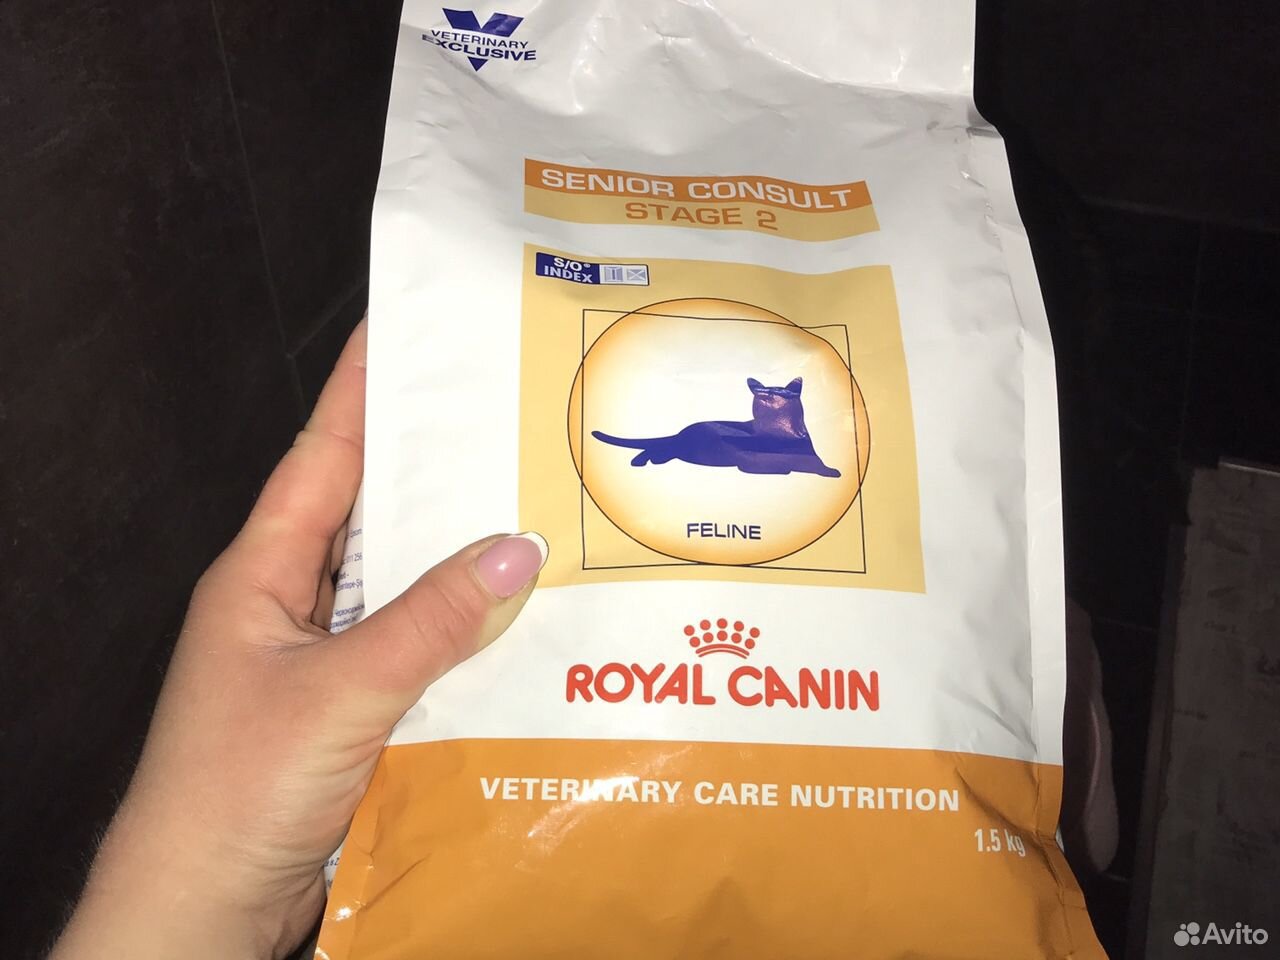 Royal Canin consalt 7+. Роялканин Фелине ф 23 веткорм. Китайские ветеринарные корма.